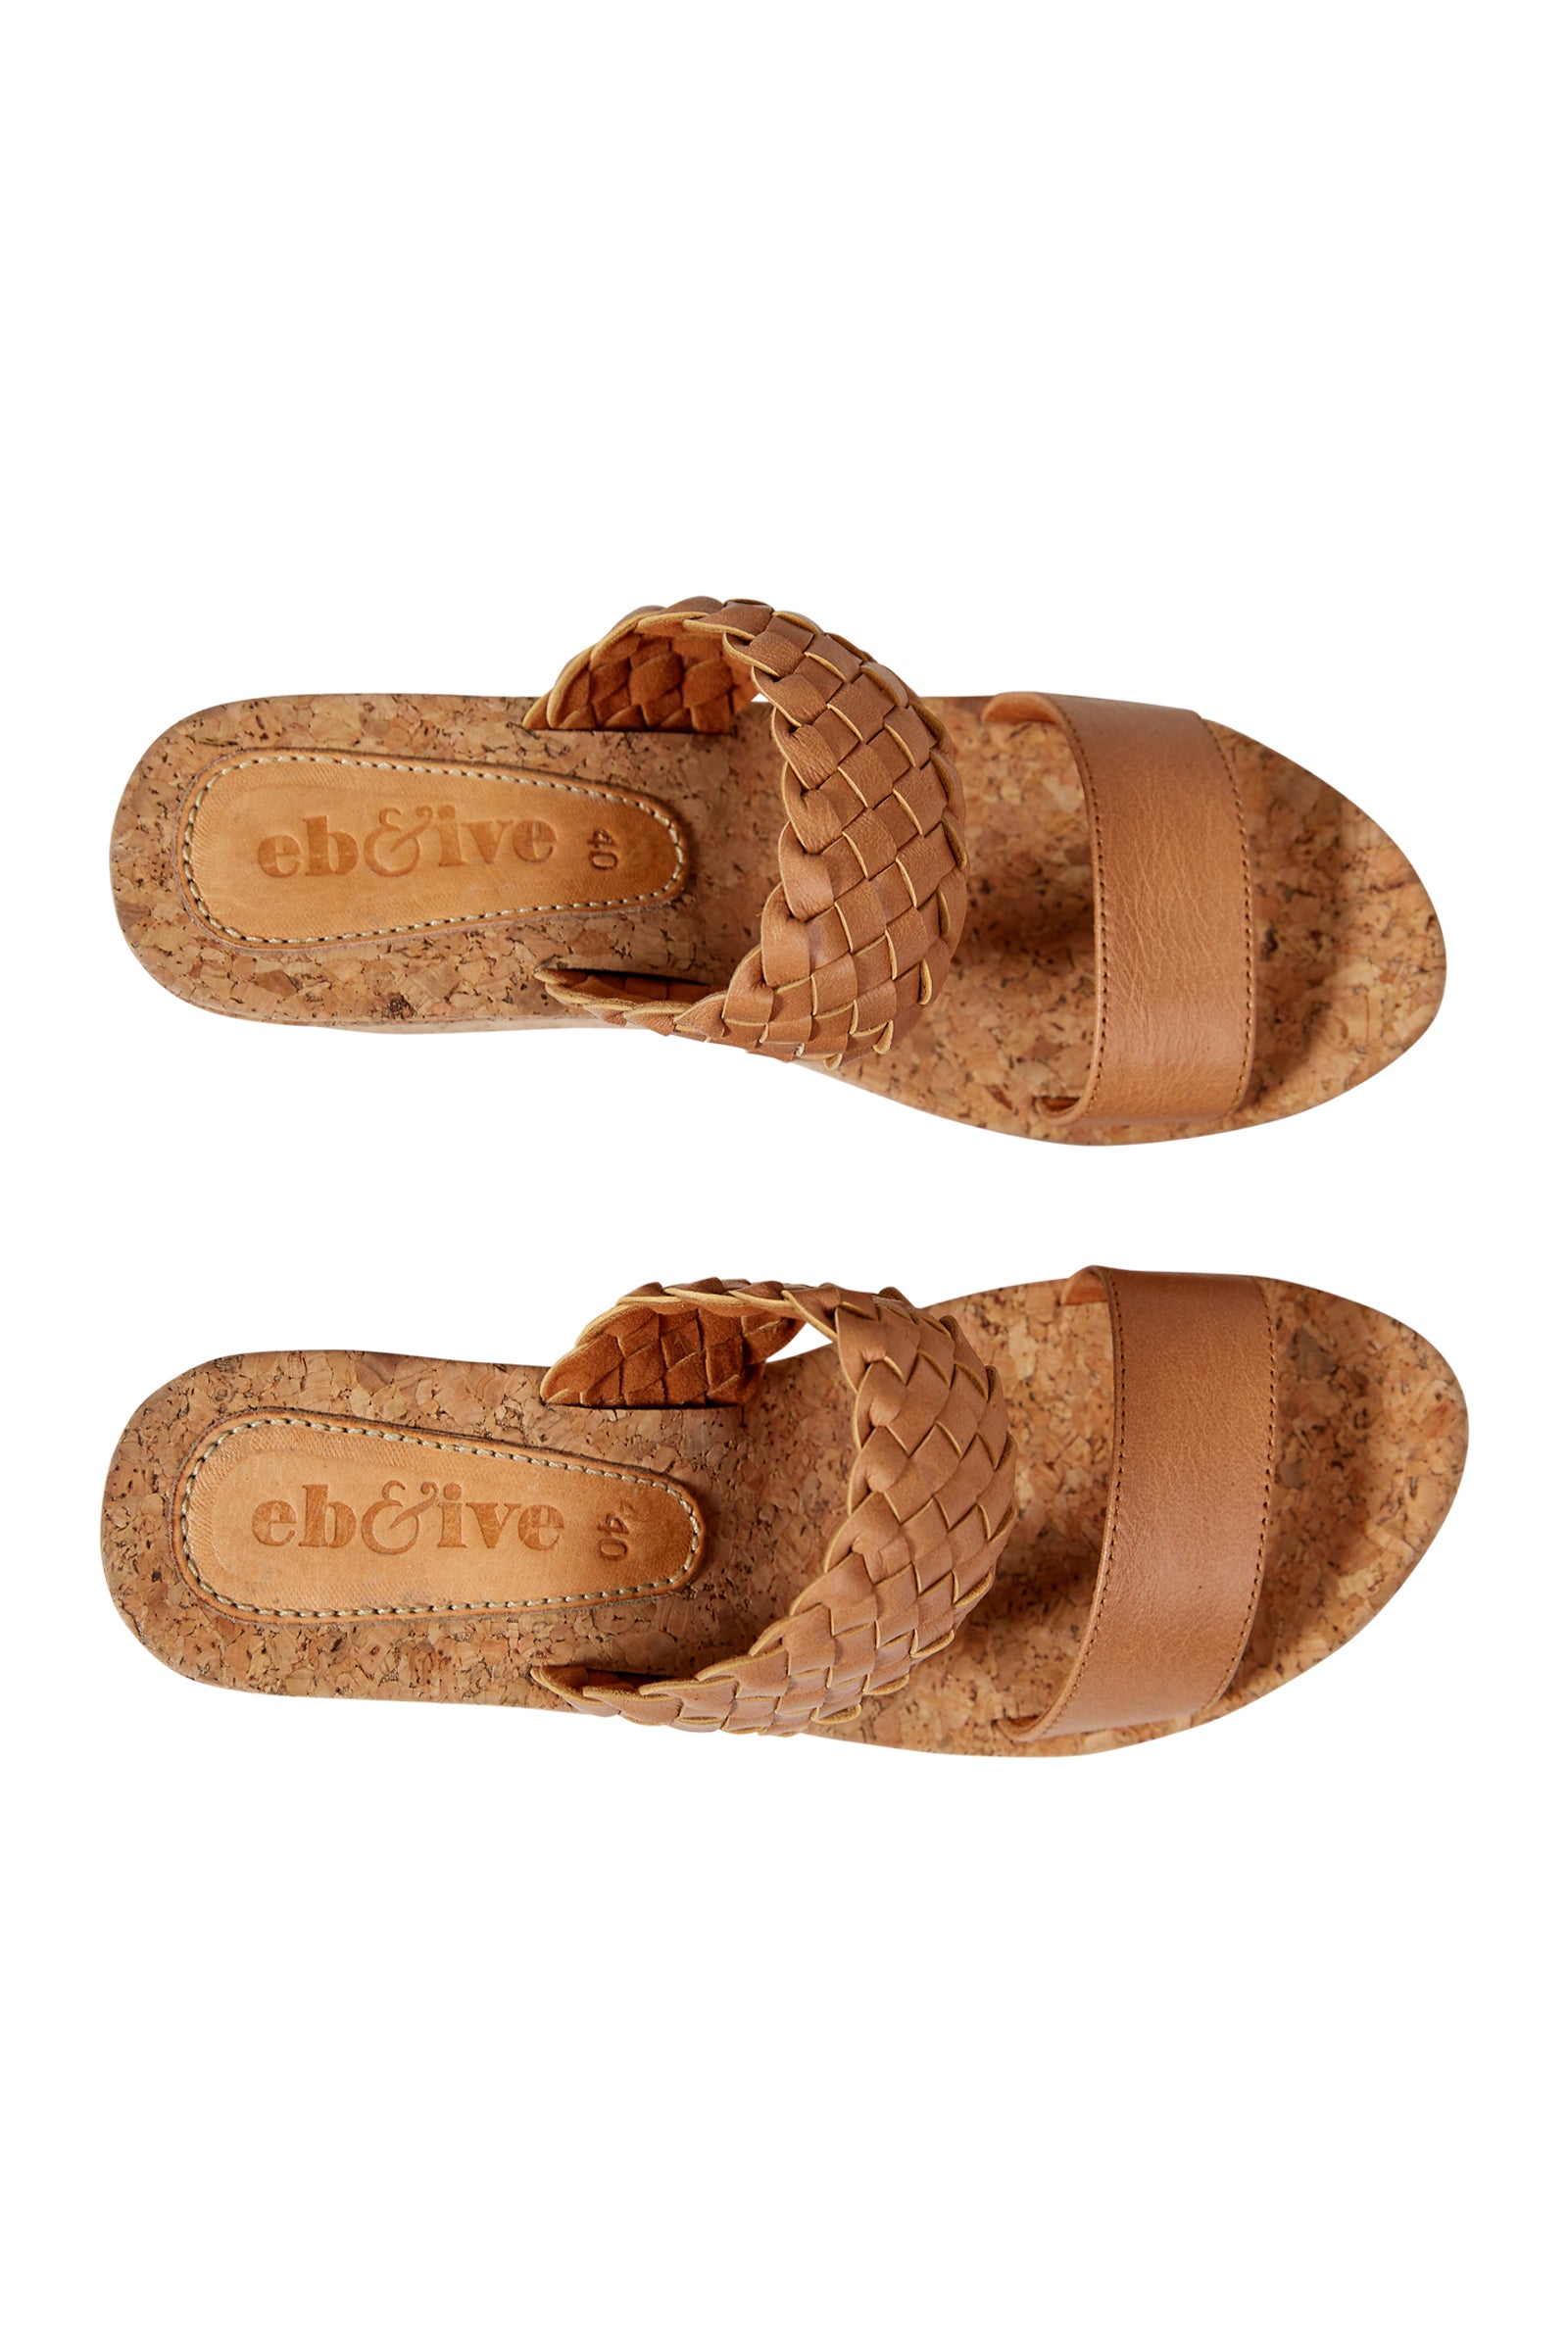 Utopia Wedge - Tan - eb&ive Footwear - Sandals